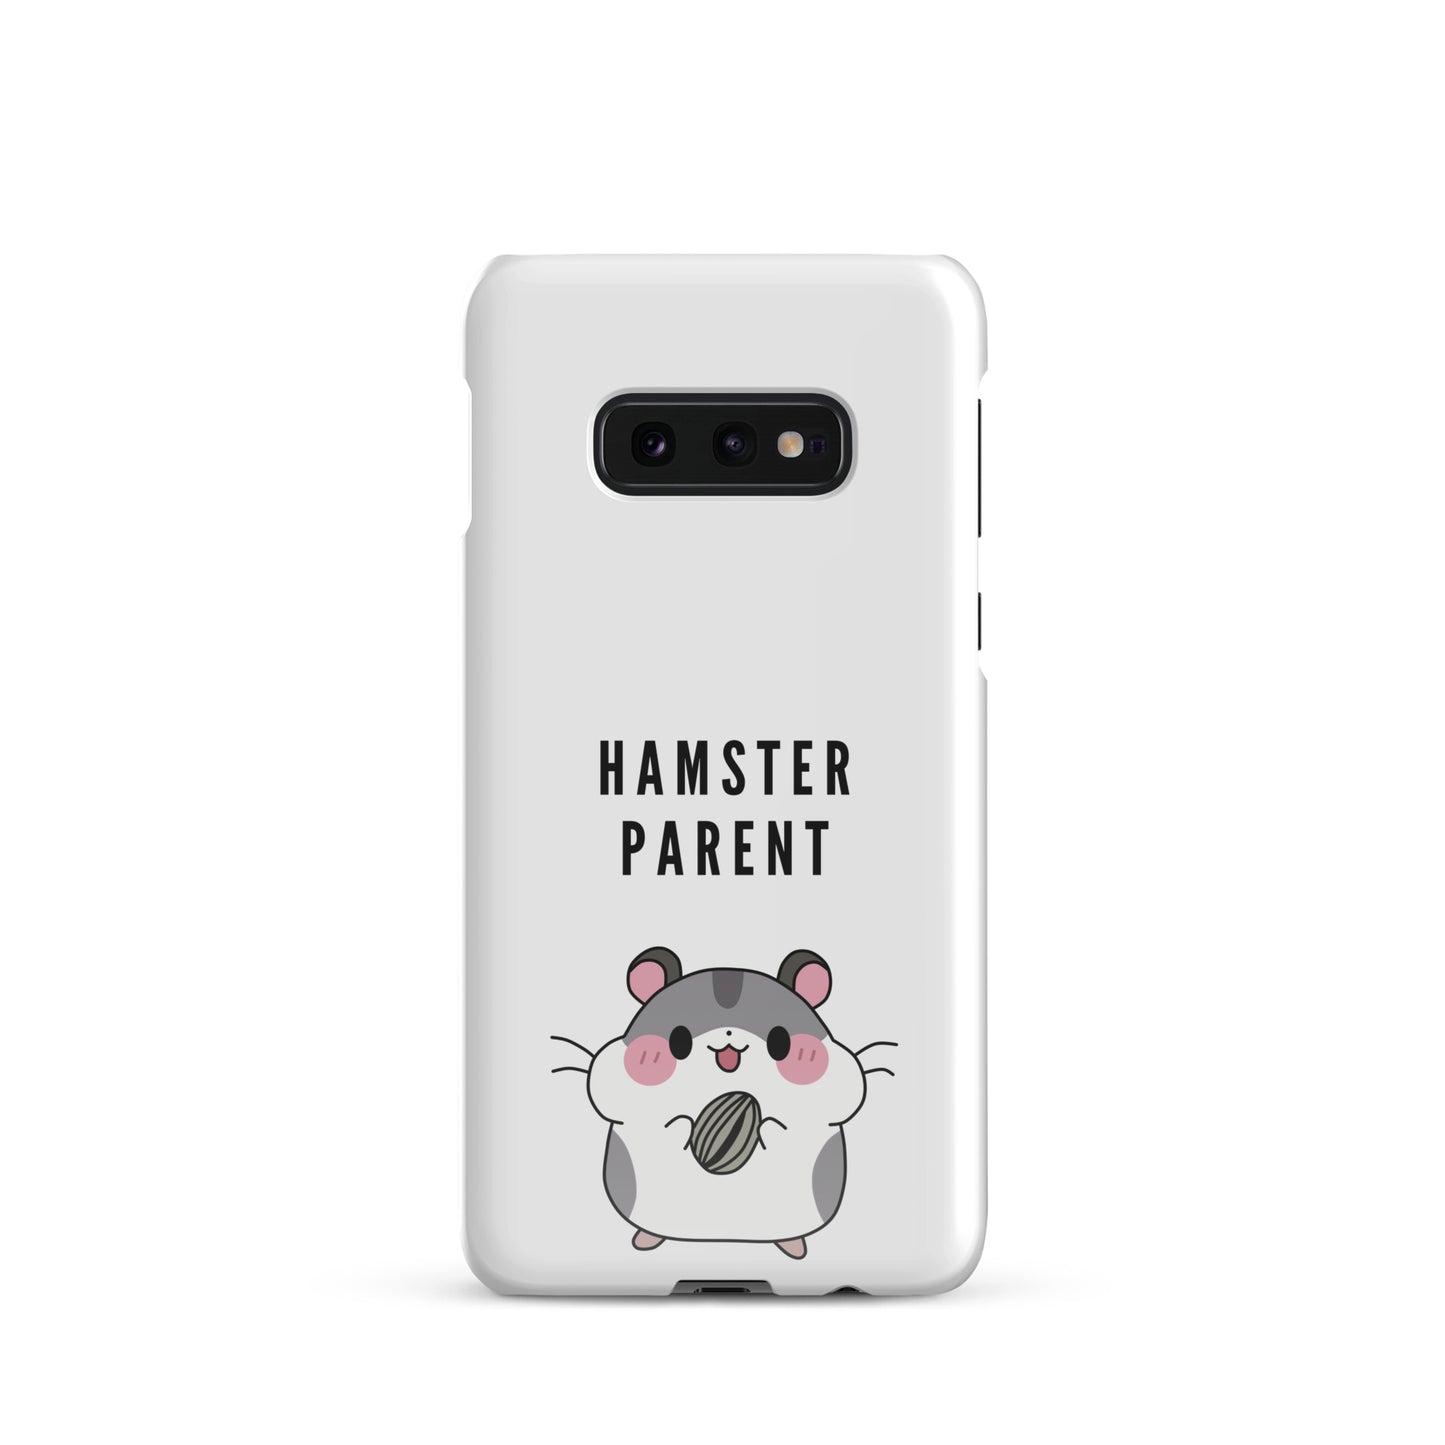 Hamster Parent case for Samsung®